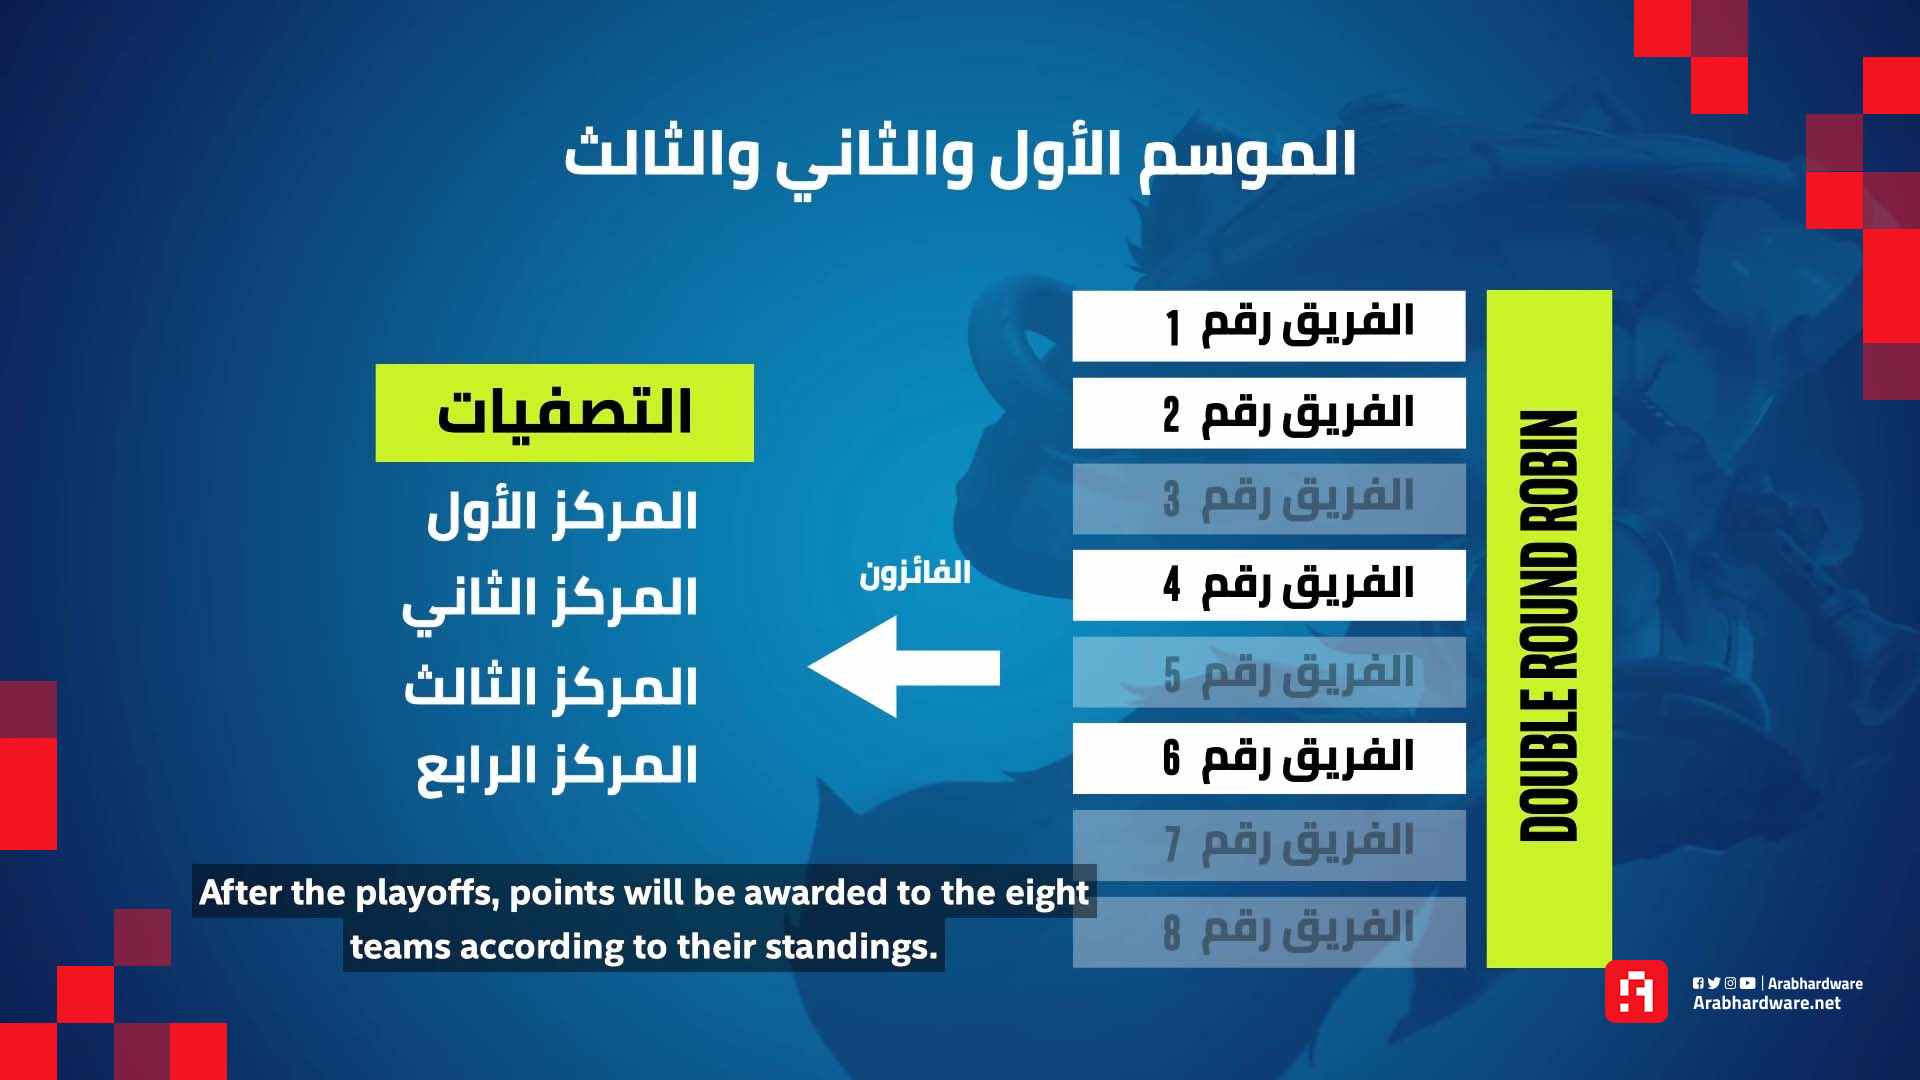 تصفيات كأس العرب 2021